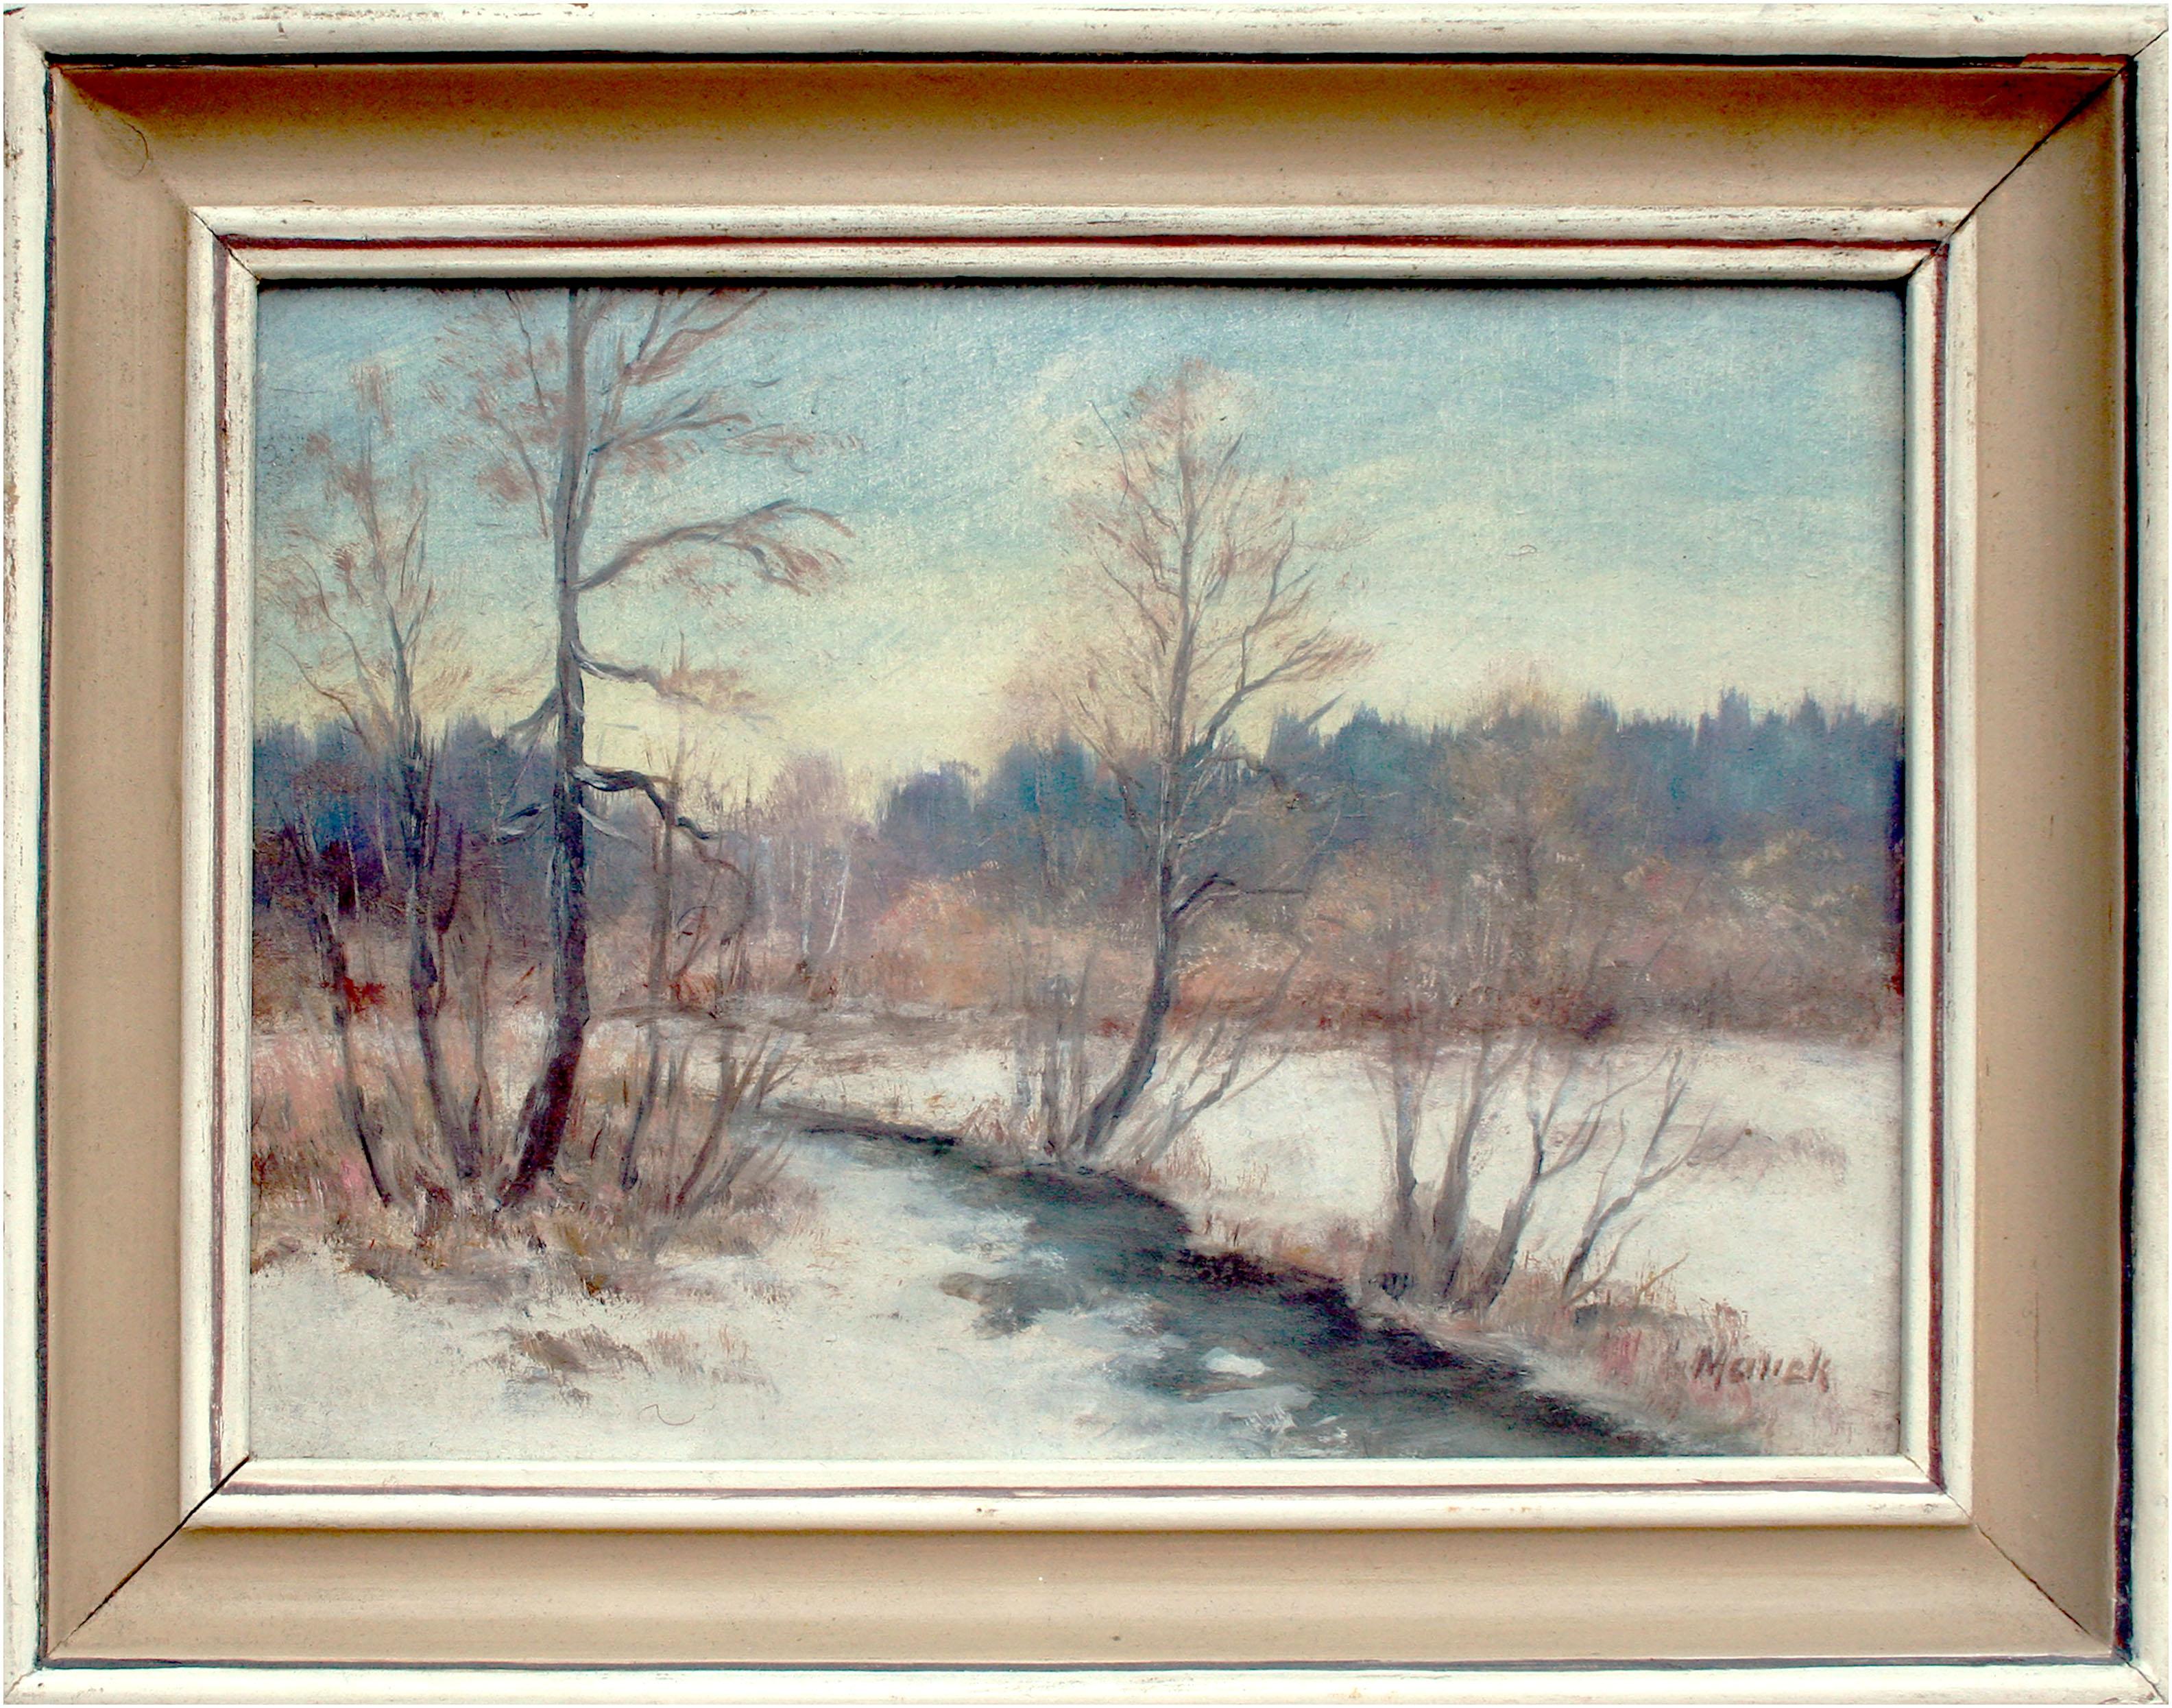 Landscape Painting Unknown - Paysage d'hiver des années 1970 - River in the Snow - Paysage de neige